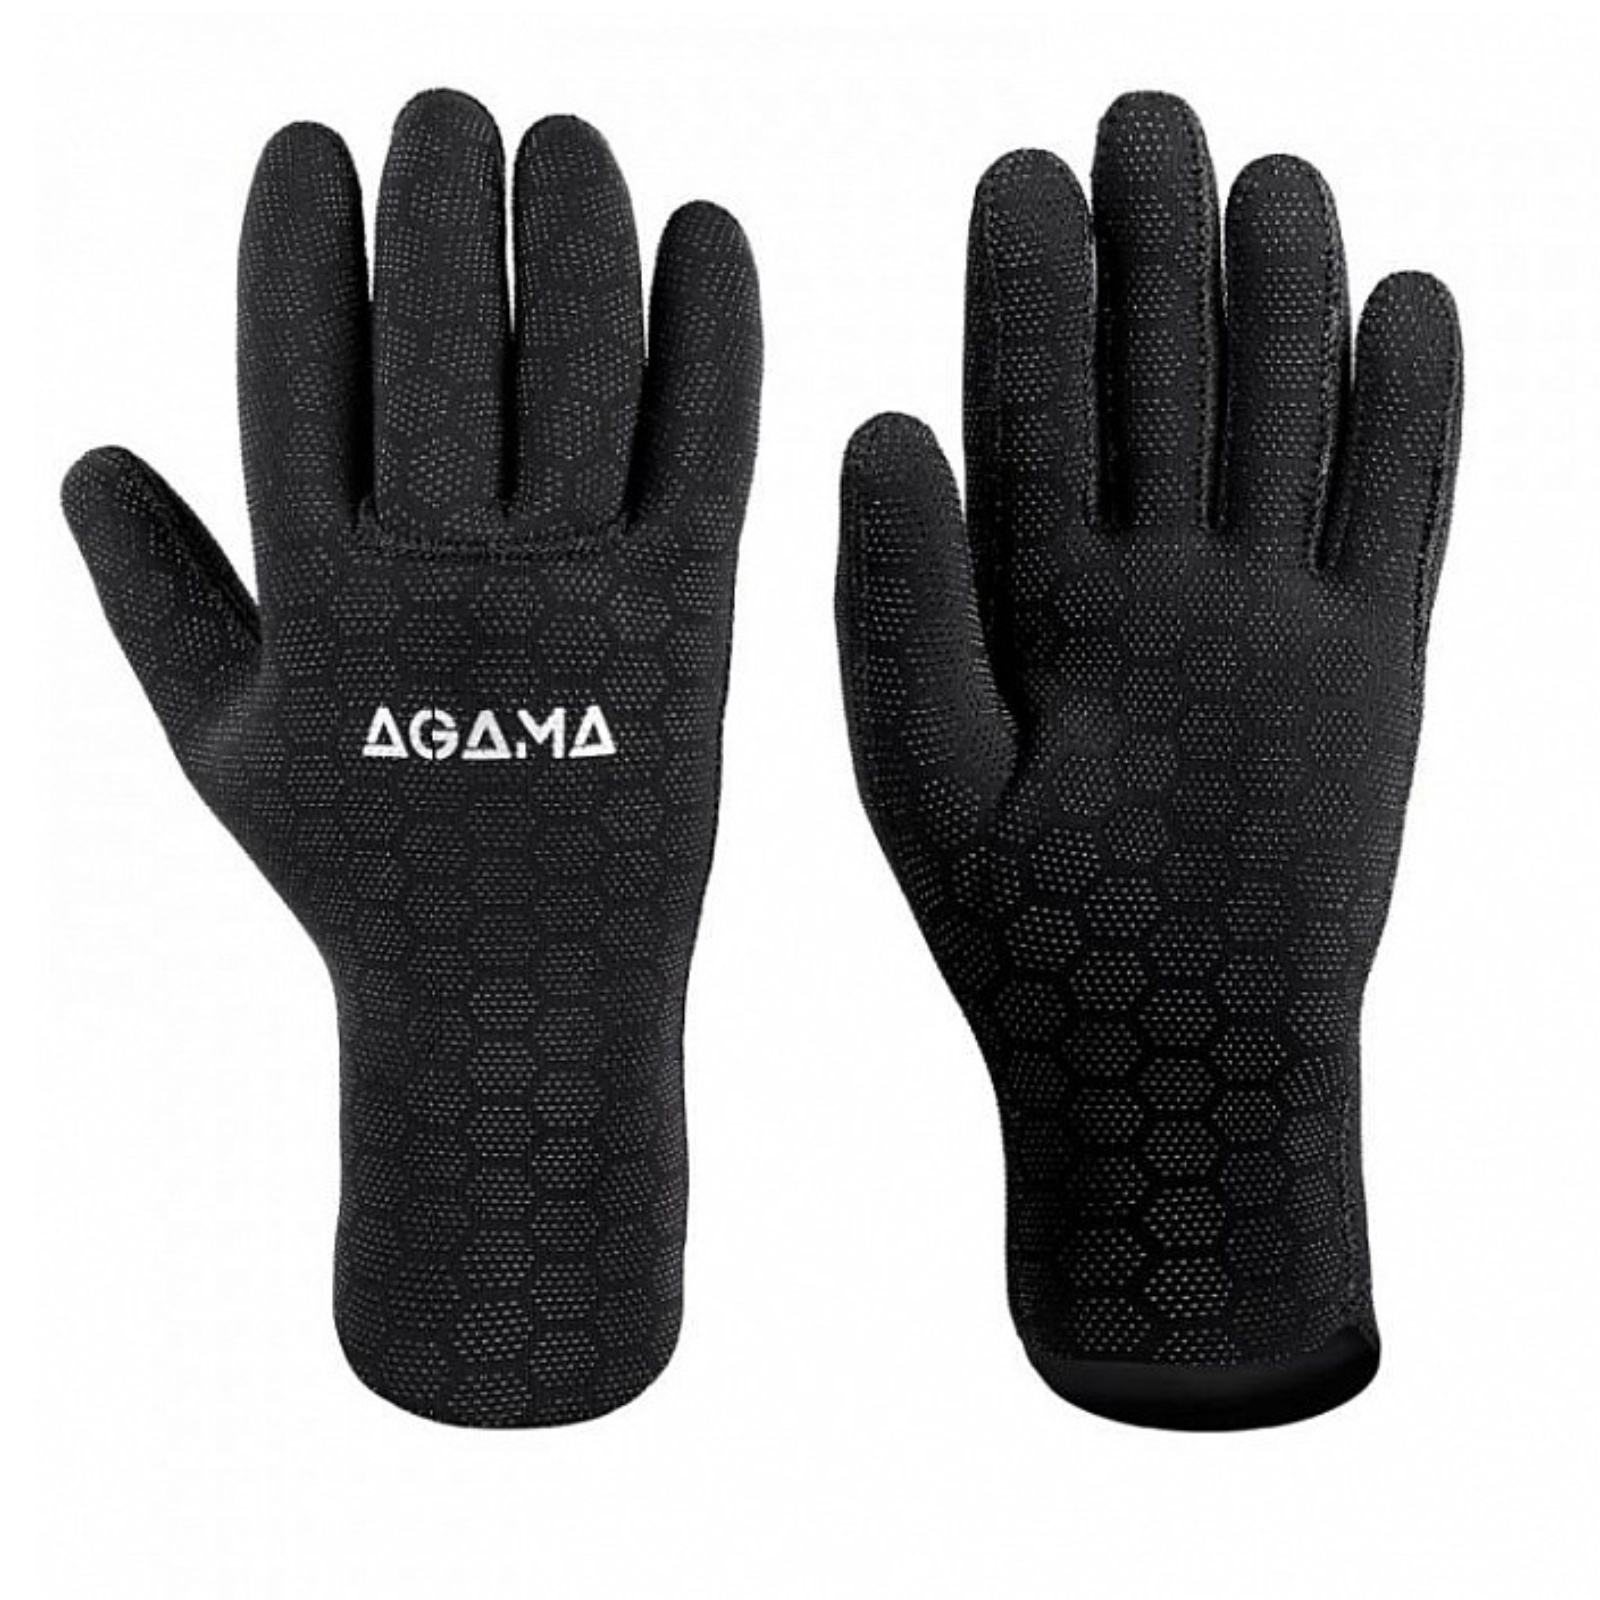 Neoprenové rukavice AGAMA Ultrastretch 3,5 mm - vel. S